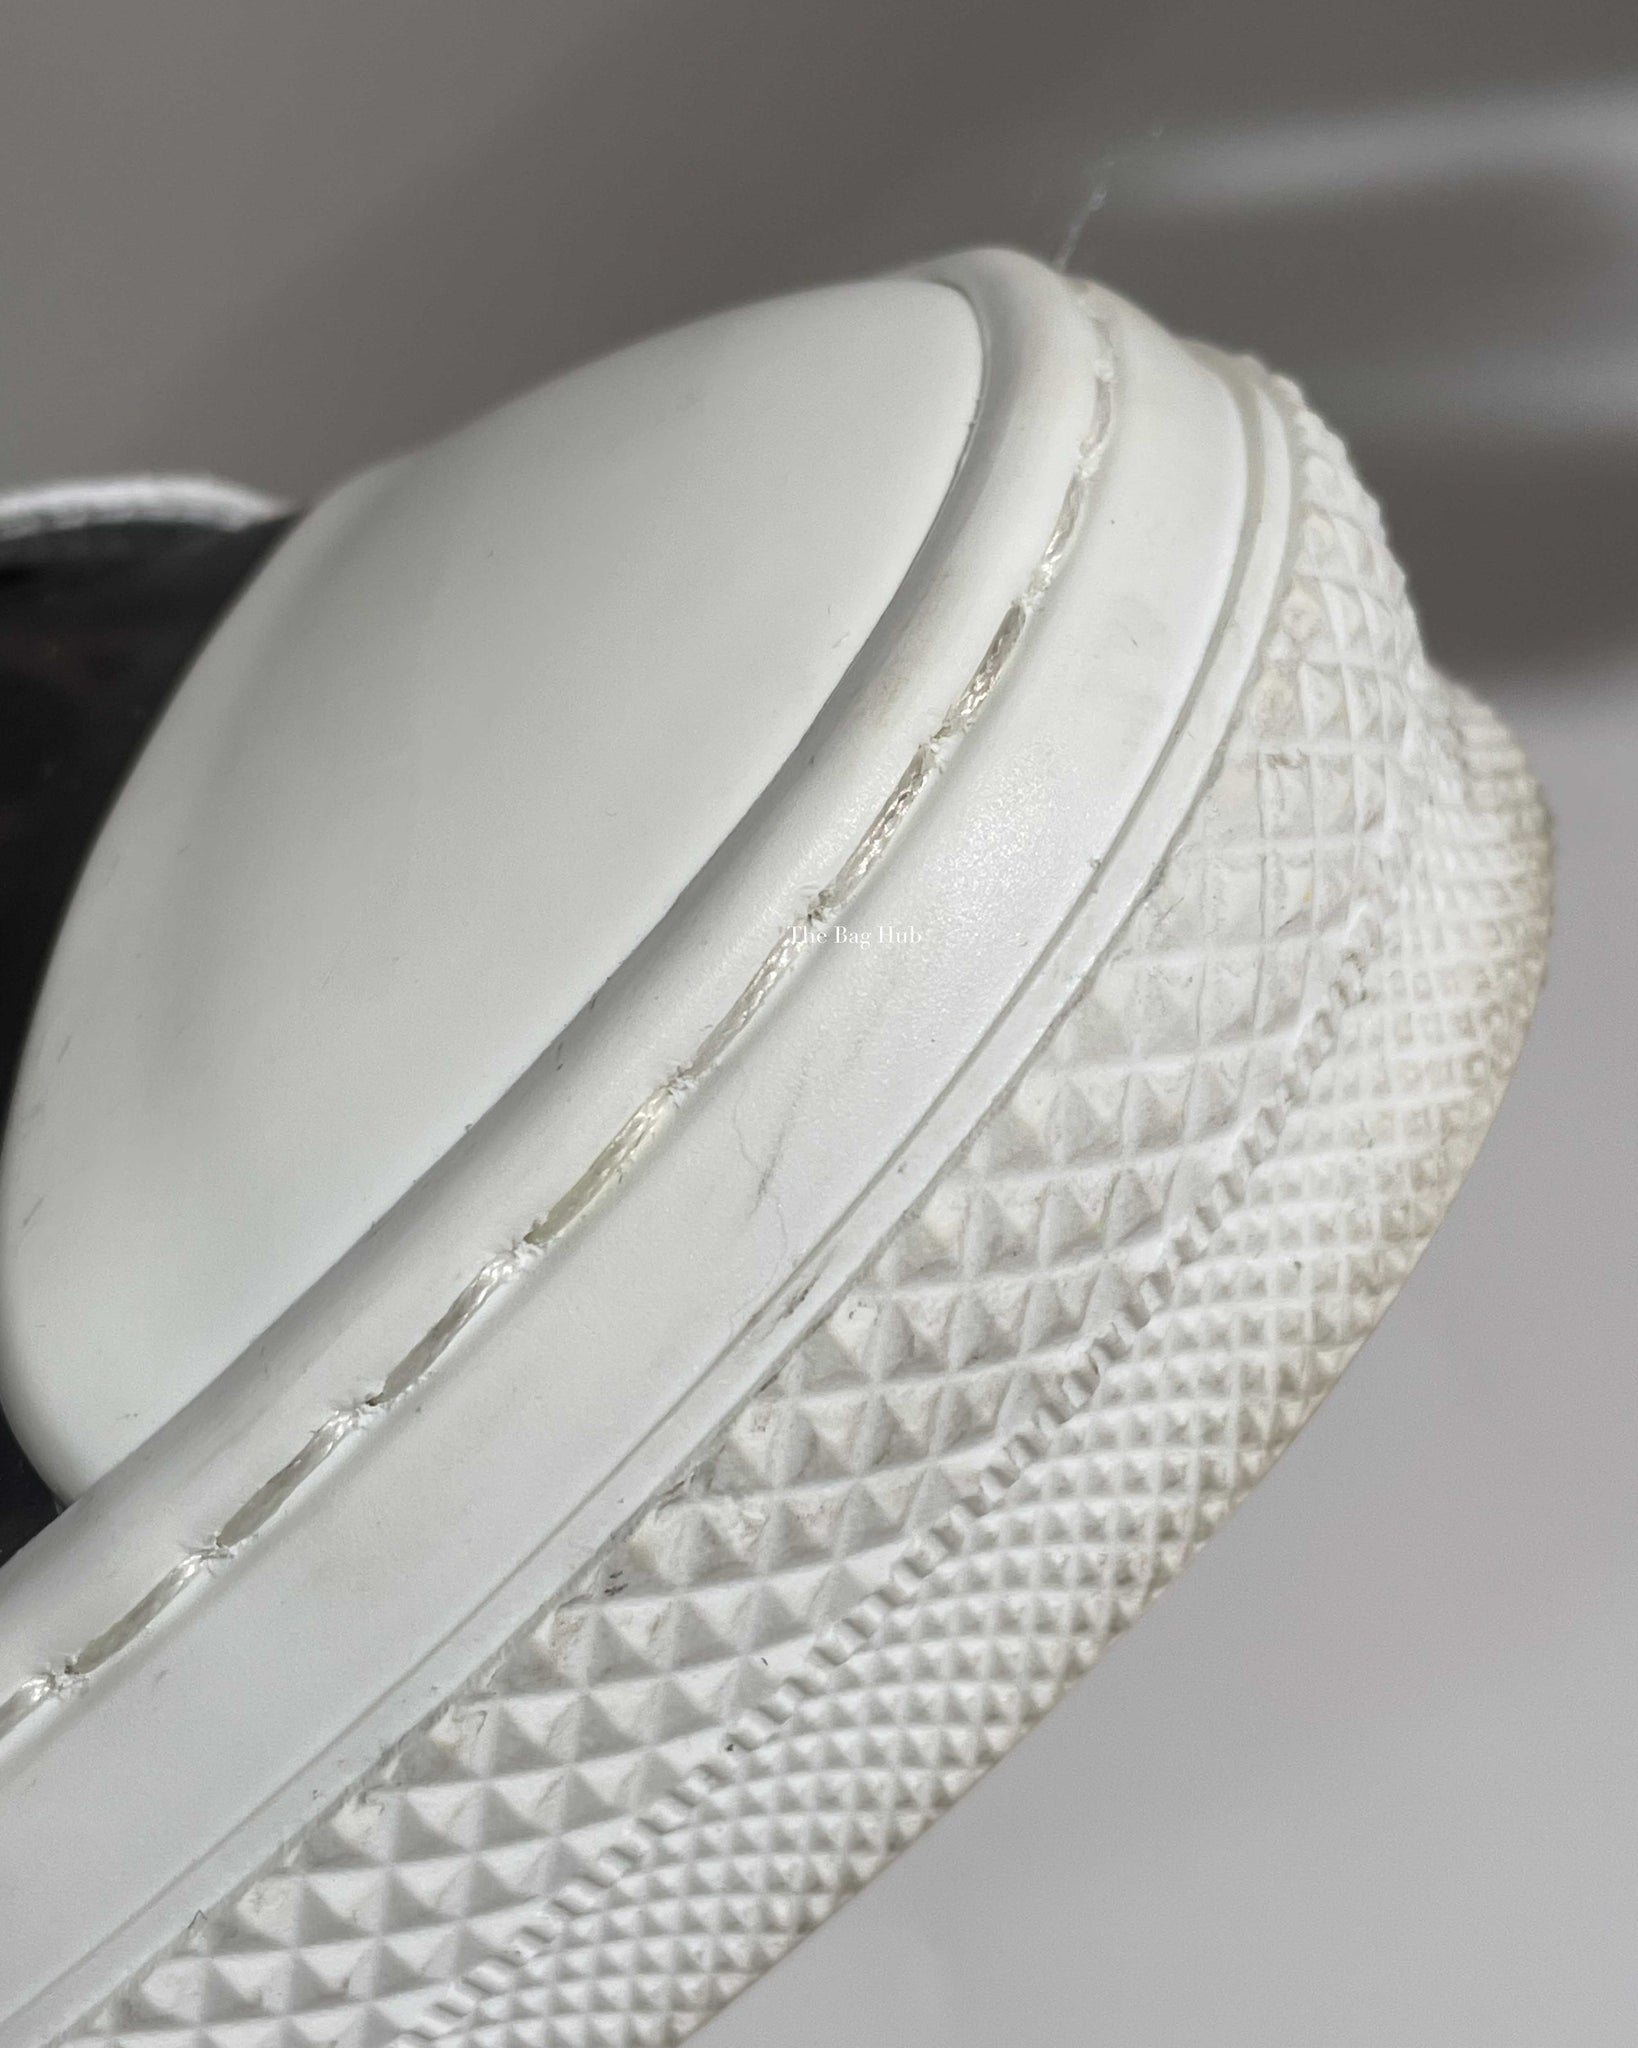 Dior Black/White Oblique Canvas Transparent B23 Low Top Sneakers Size 44-12